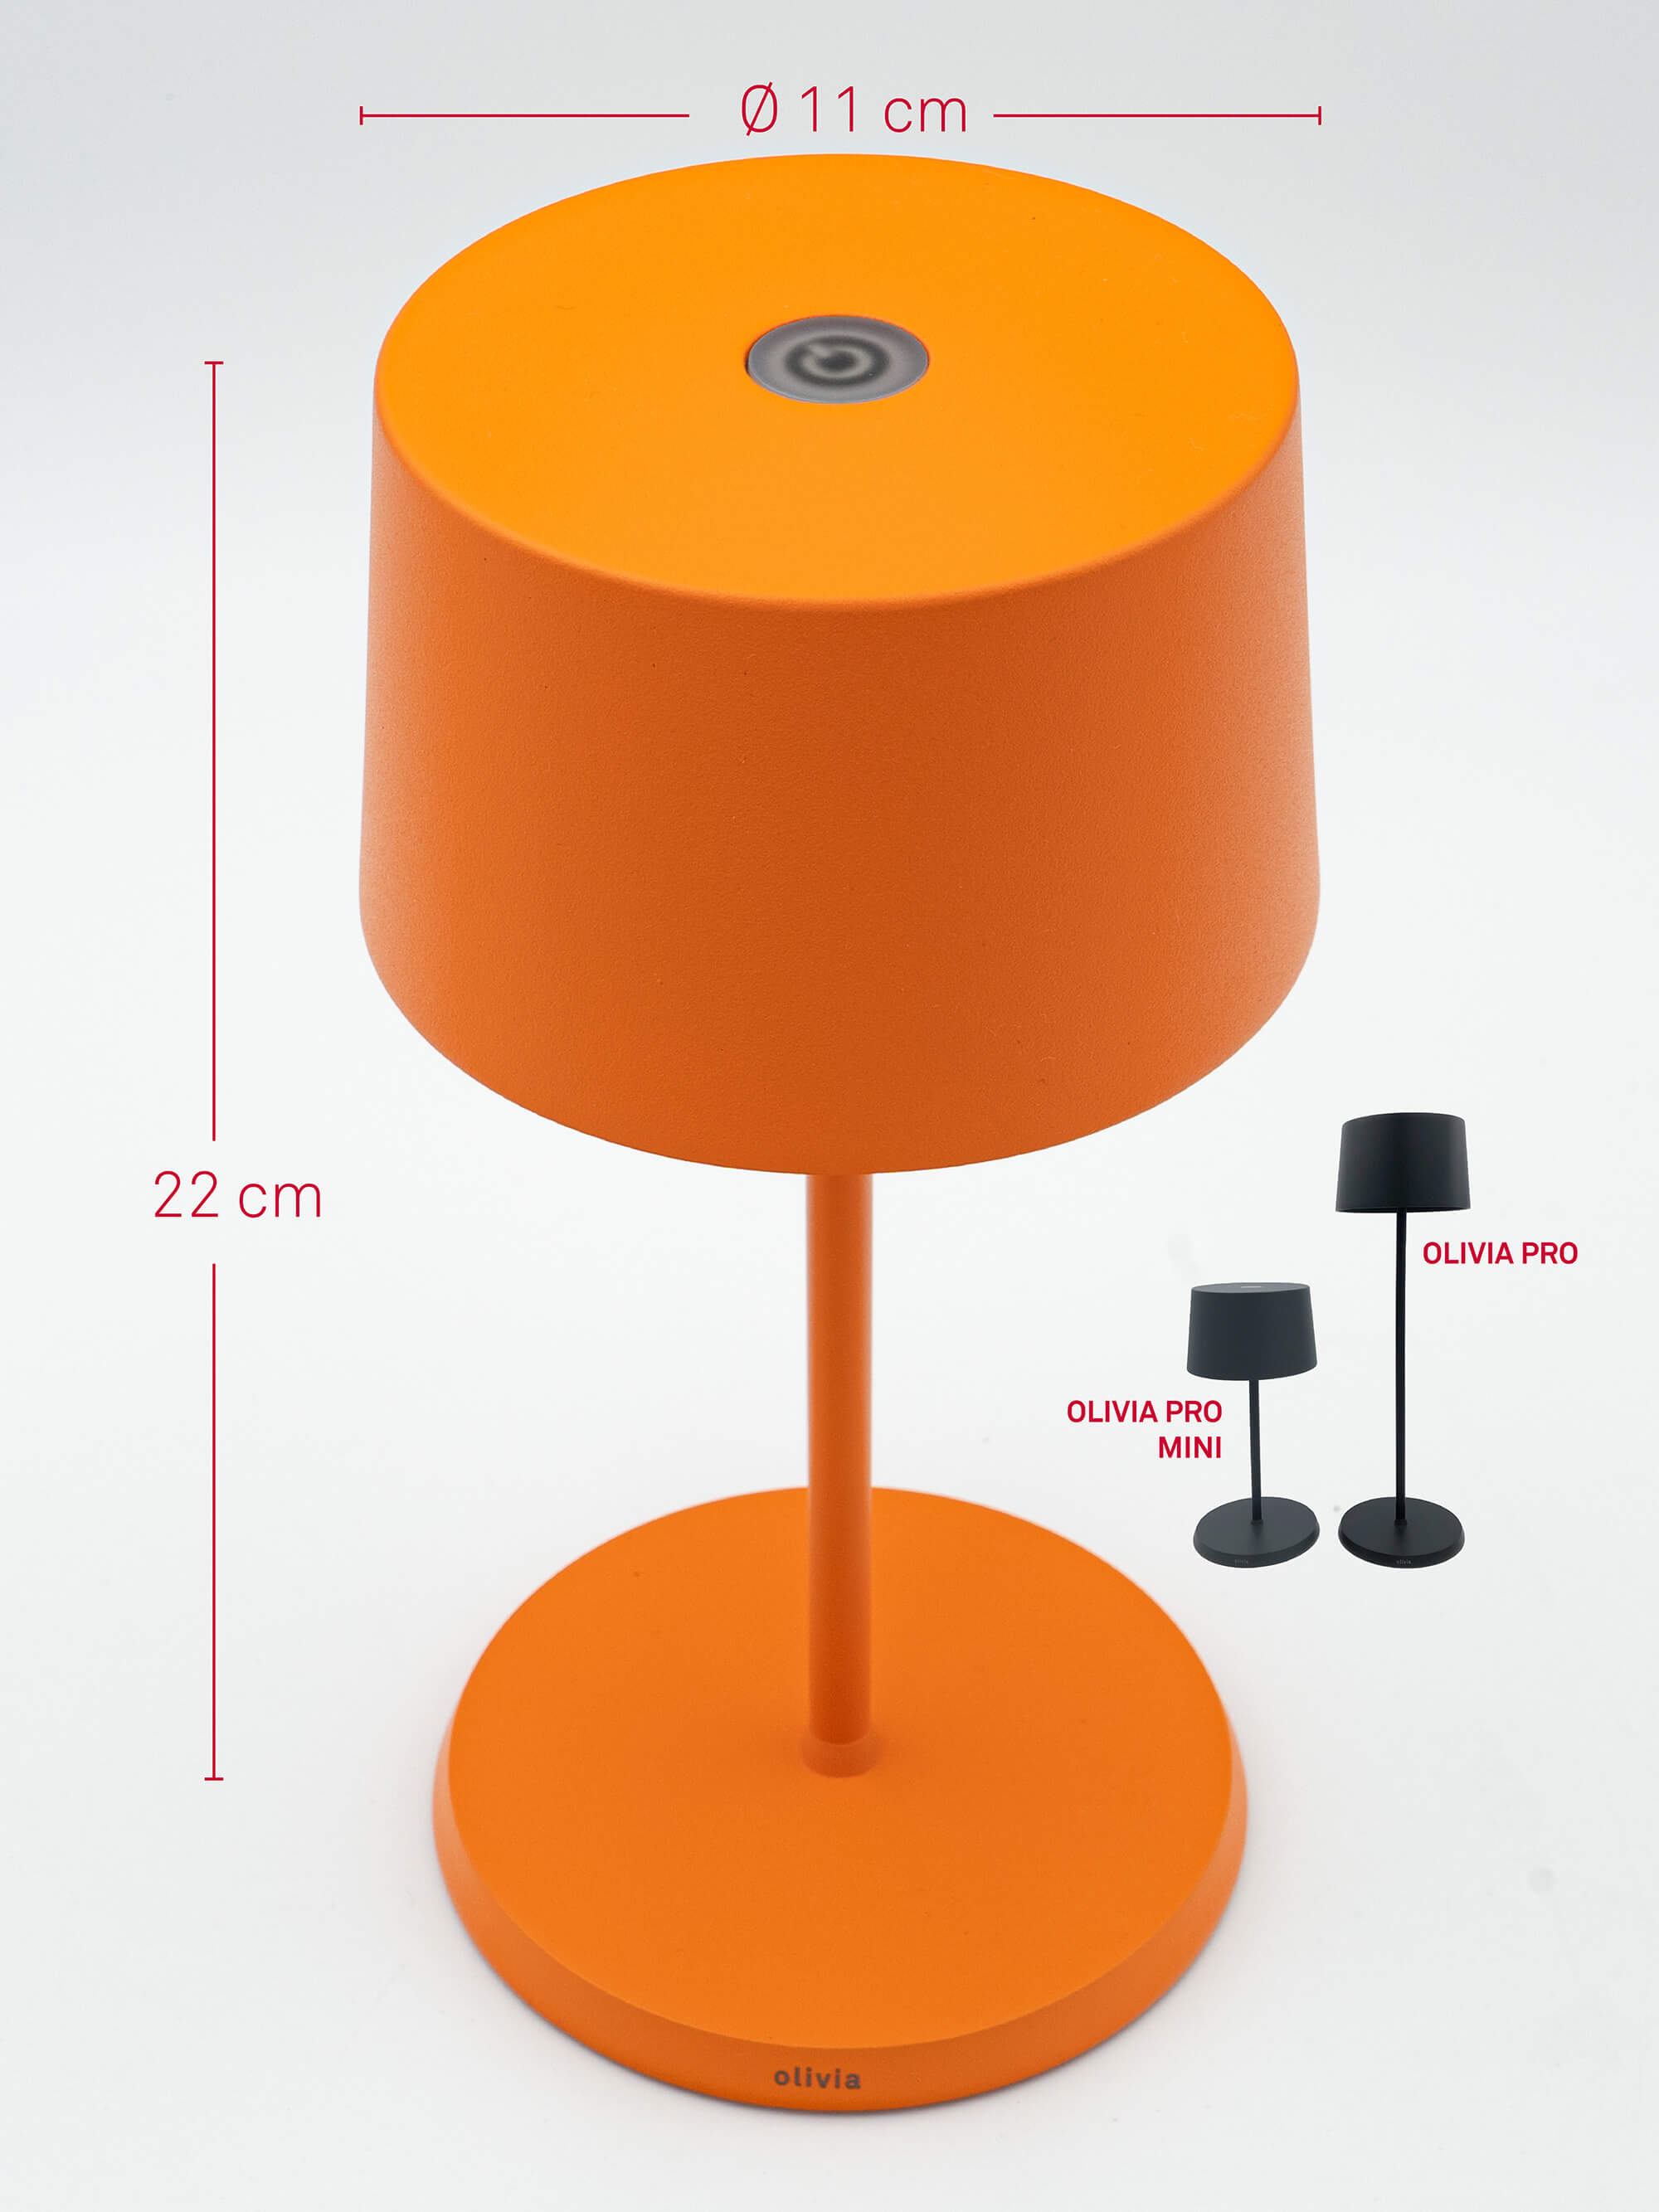 Zafferano Olivia Pro Mini - Arancione / Orange